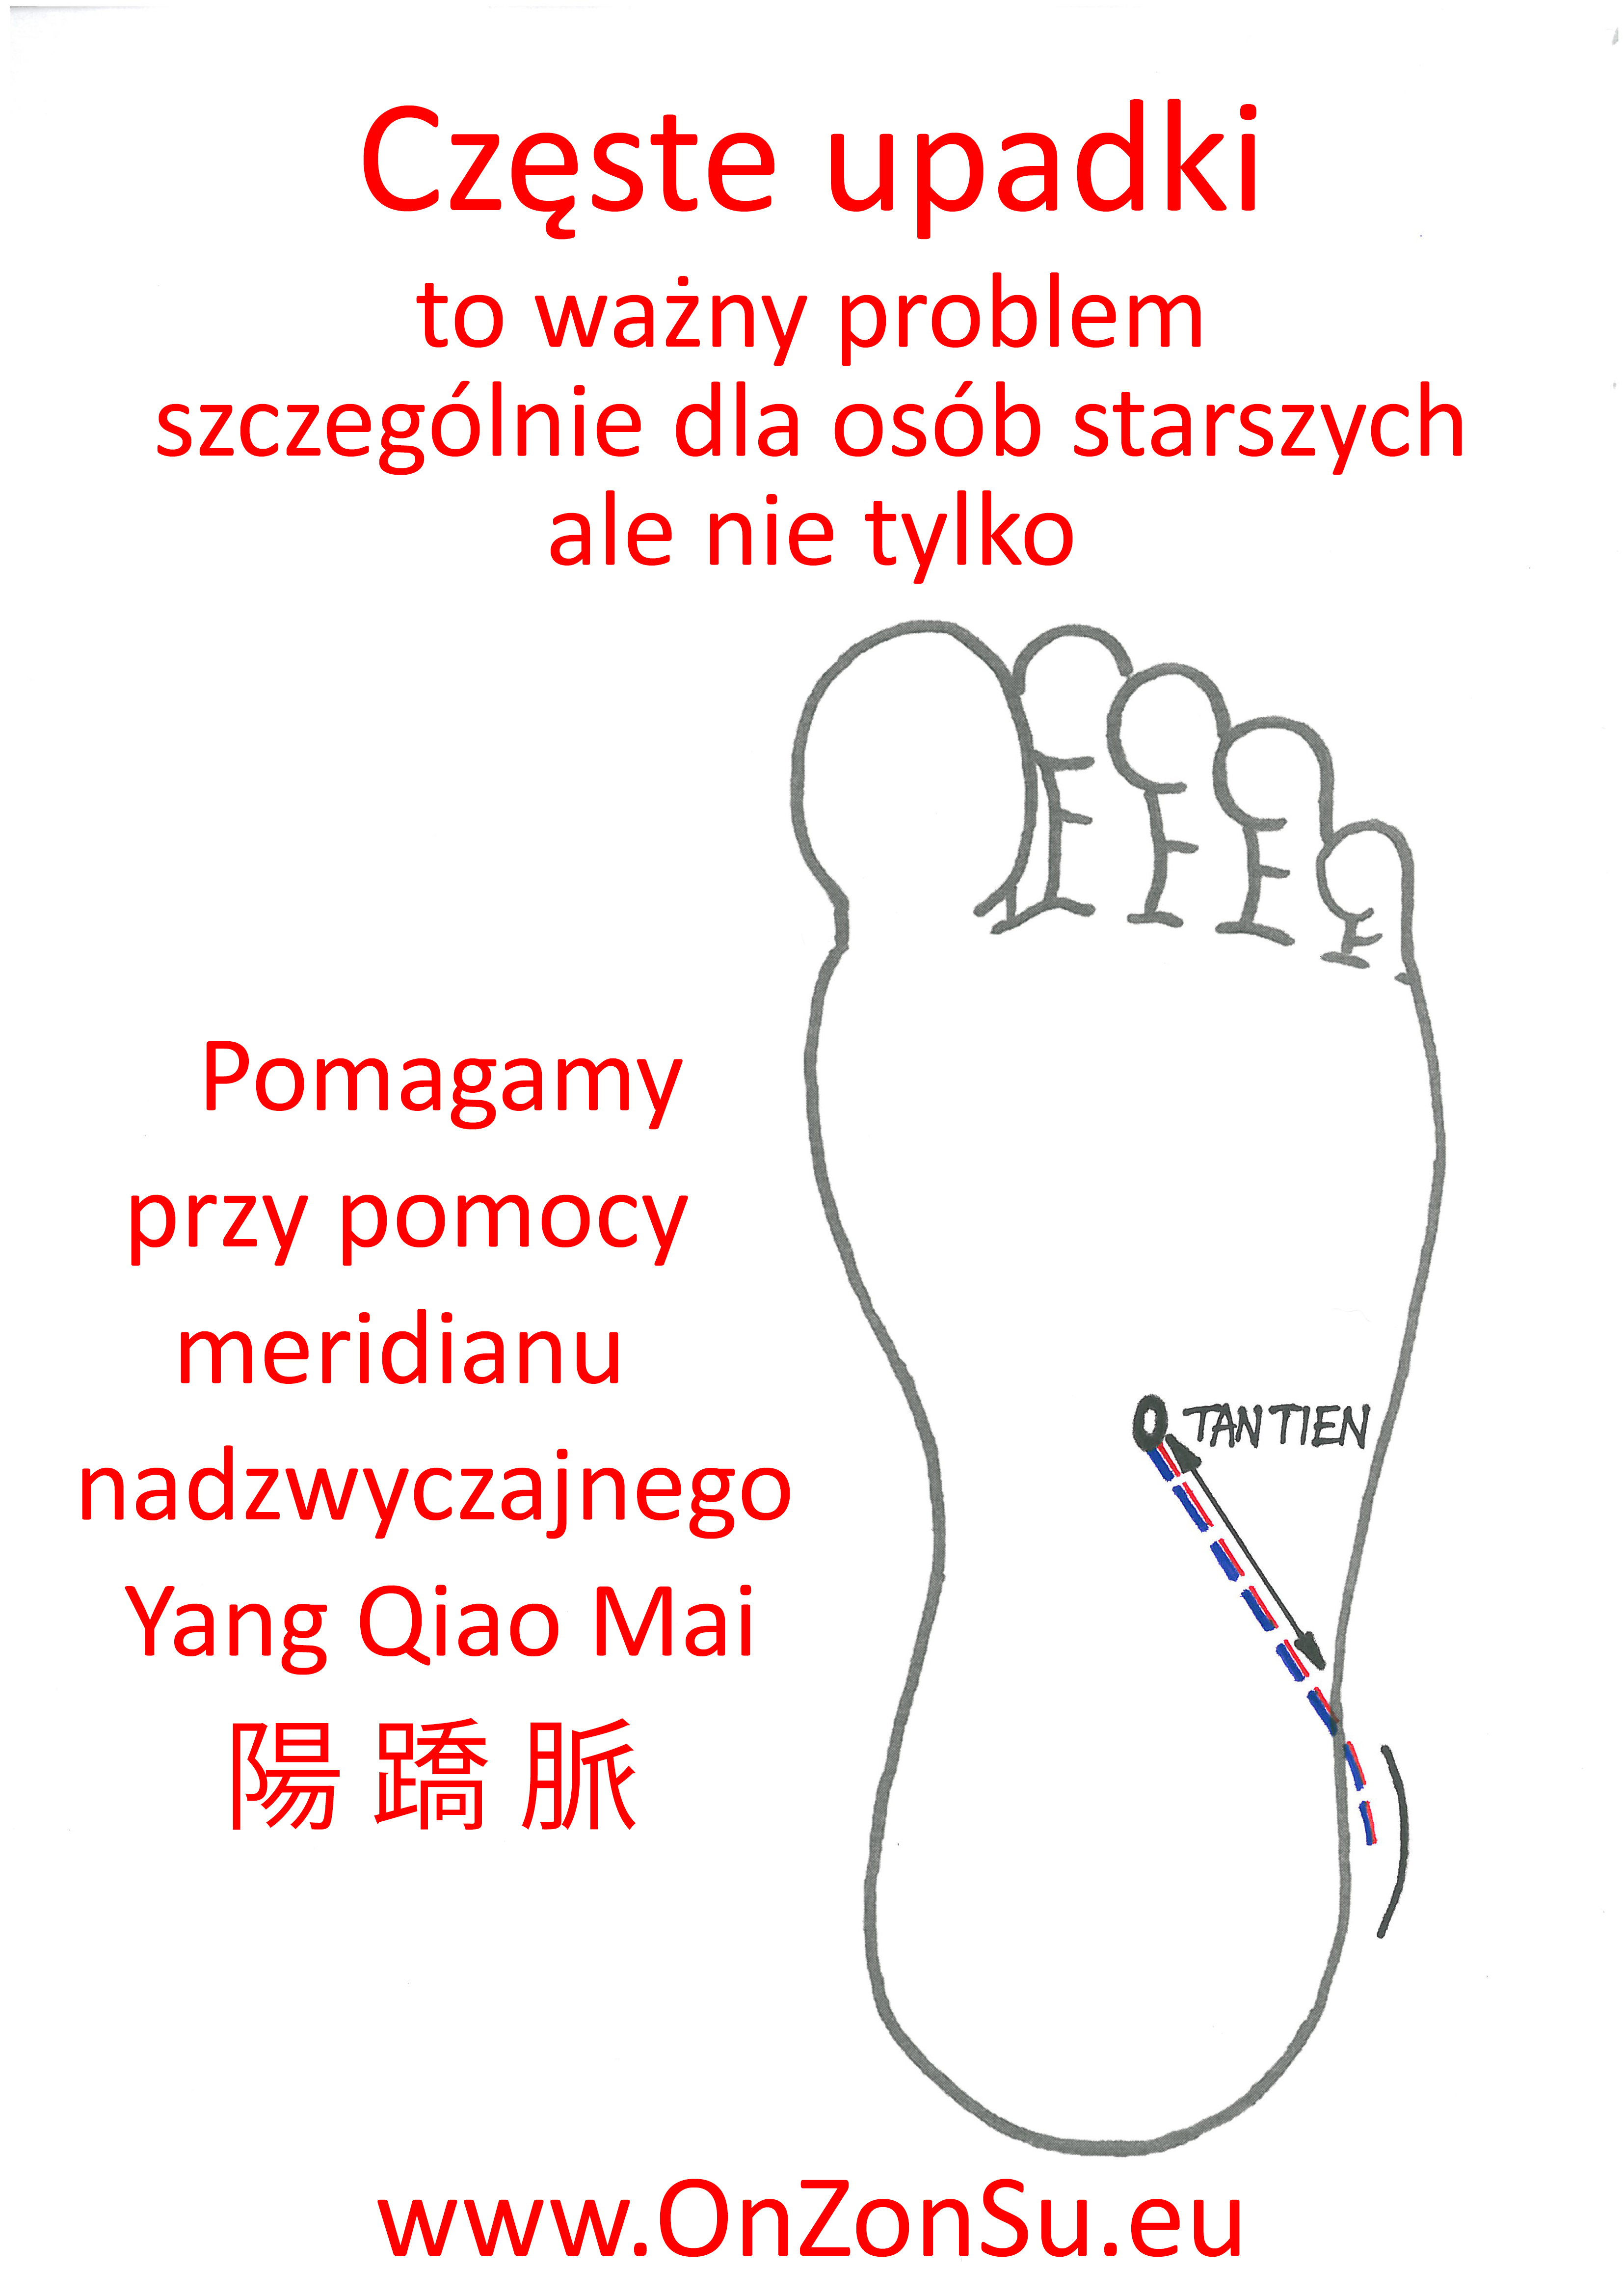 Kurs masażu stóp On Zon Su, Szkolenia refleksologii stóp - Częste upadki - pomagamy przy pomocy meridianu nadzwyczajnego Yang Qiao Mai 陽 蹻 脈 MEM.jpg